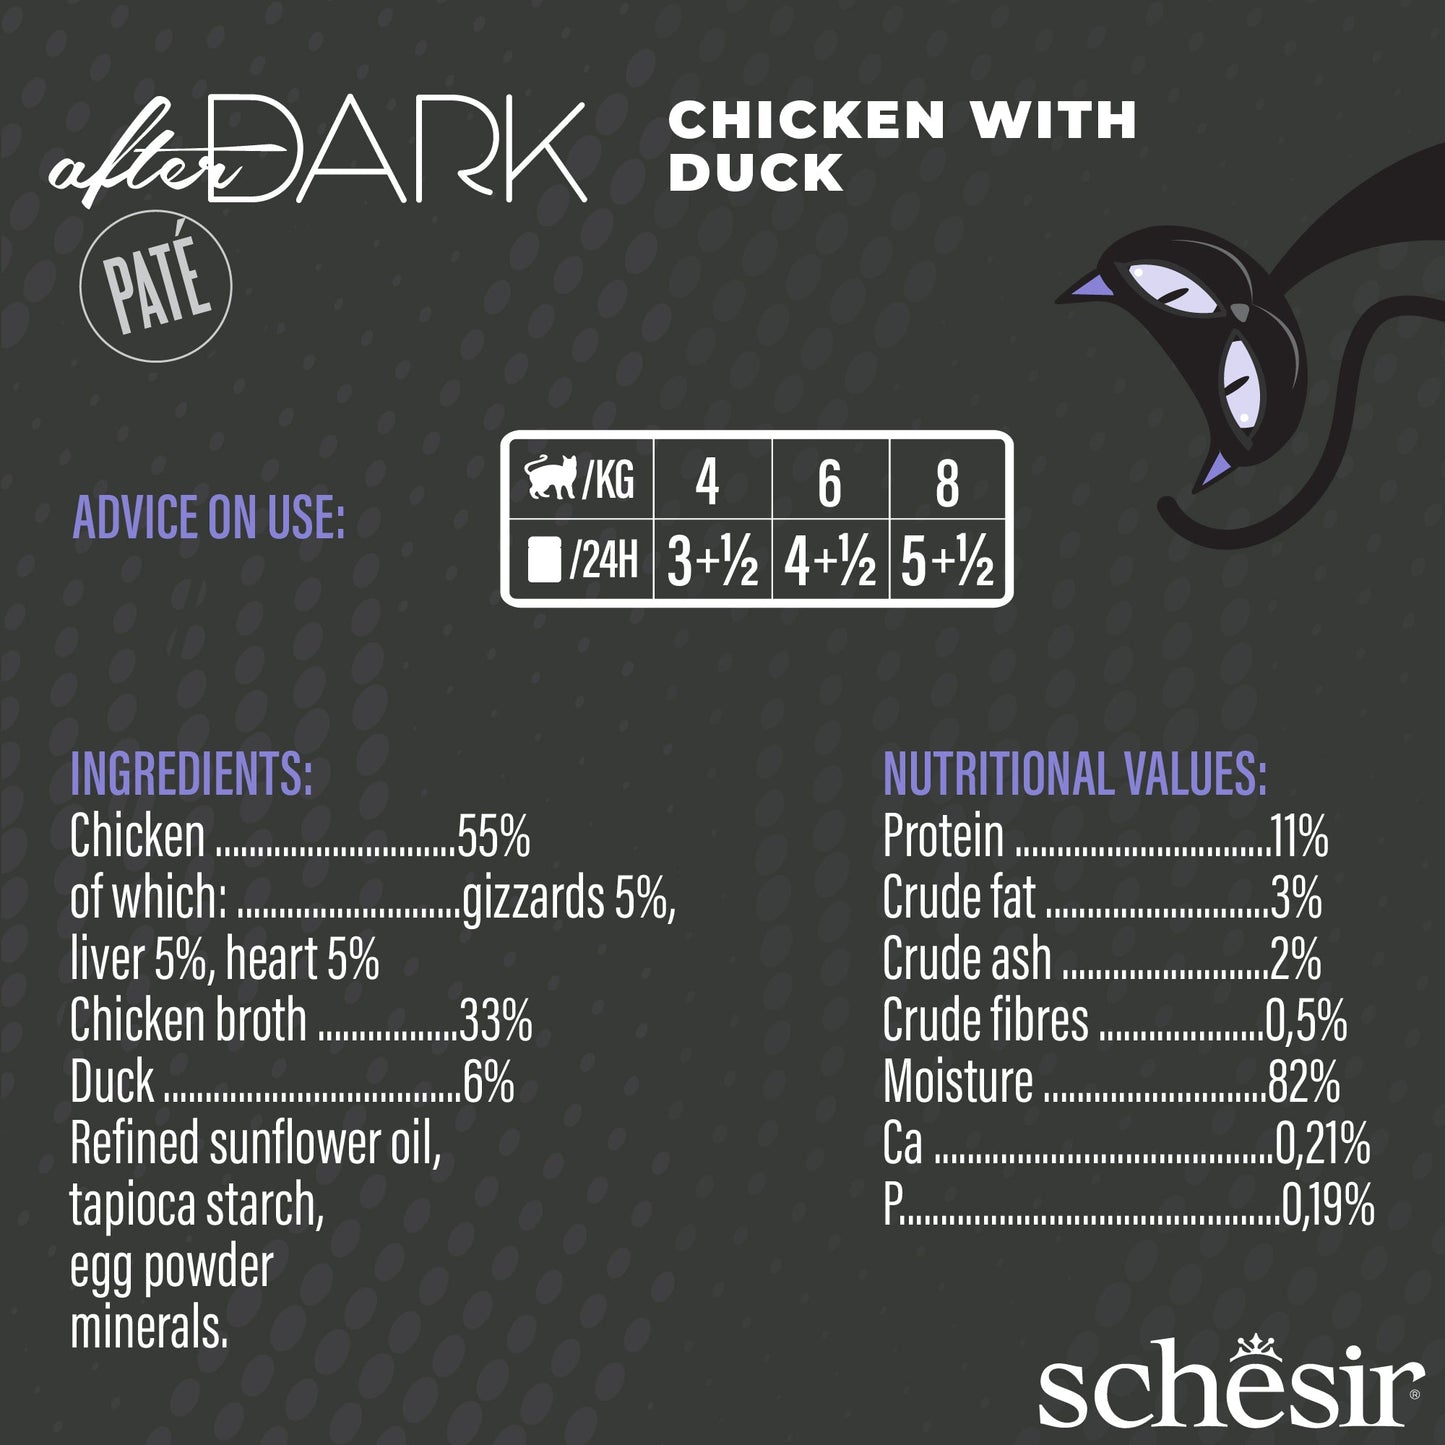 (Carton of 12) Schesir After Dark Pate - Chicken with Duck, 80g